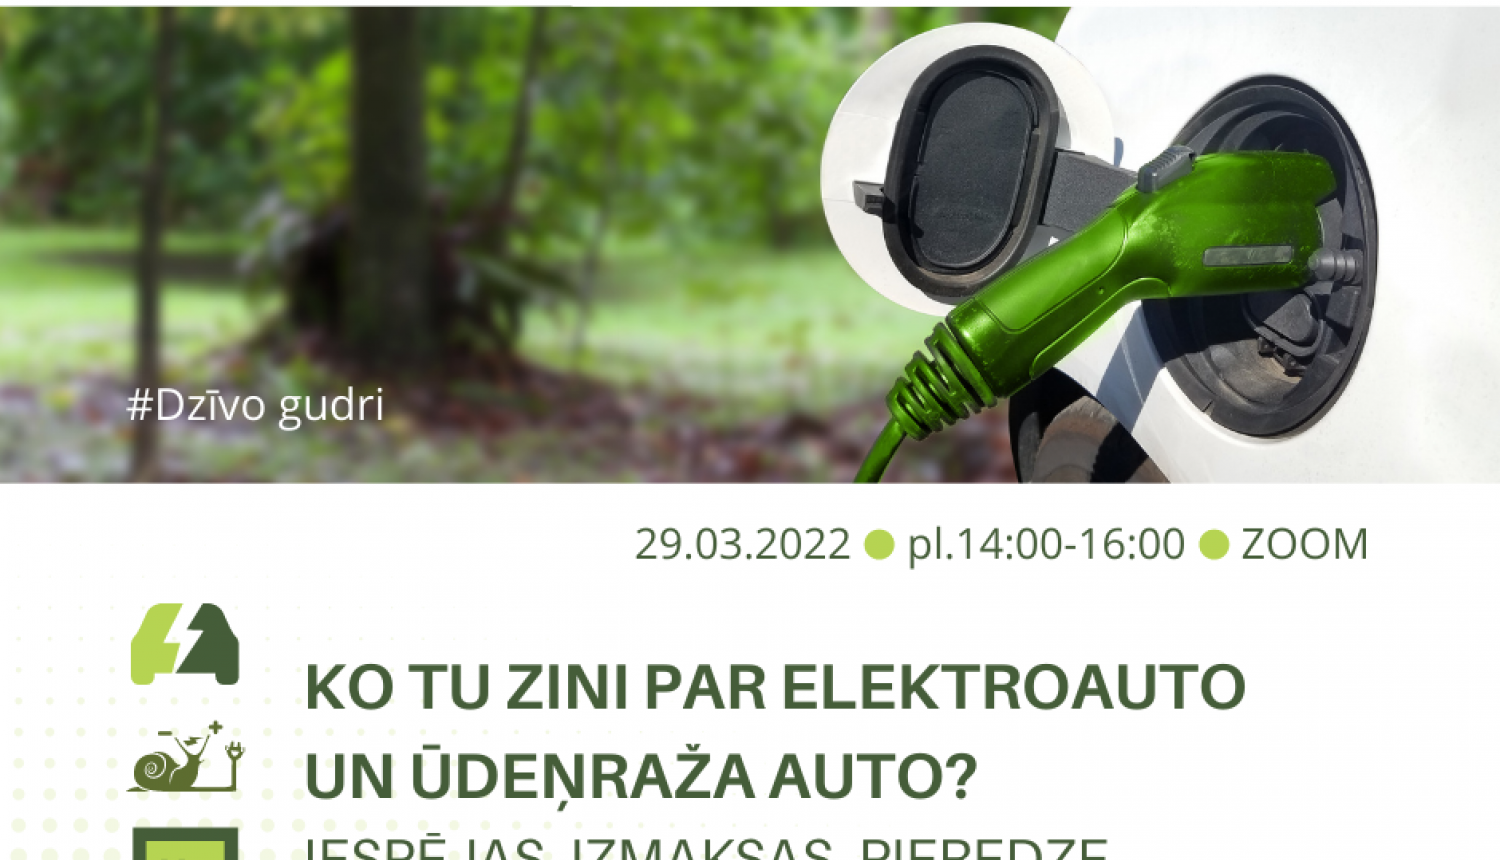 29. martā tiešsaistē notiks seminārs “Ko tu zini par elektroauto un ūdeņraža auto? Iespējas, izmaksas, pieredze.”